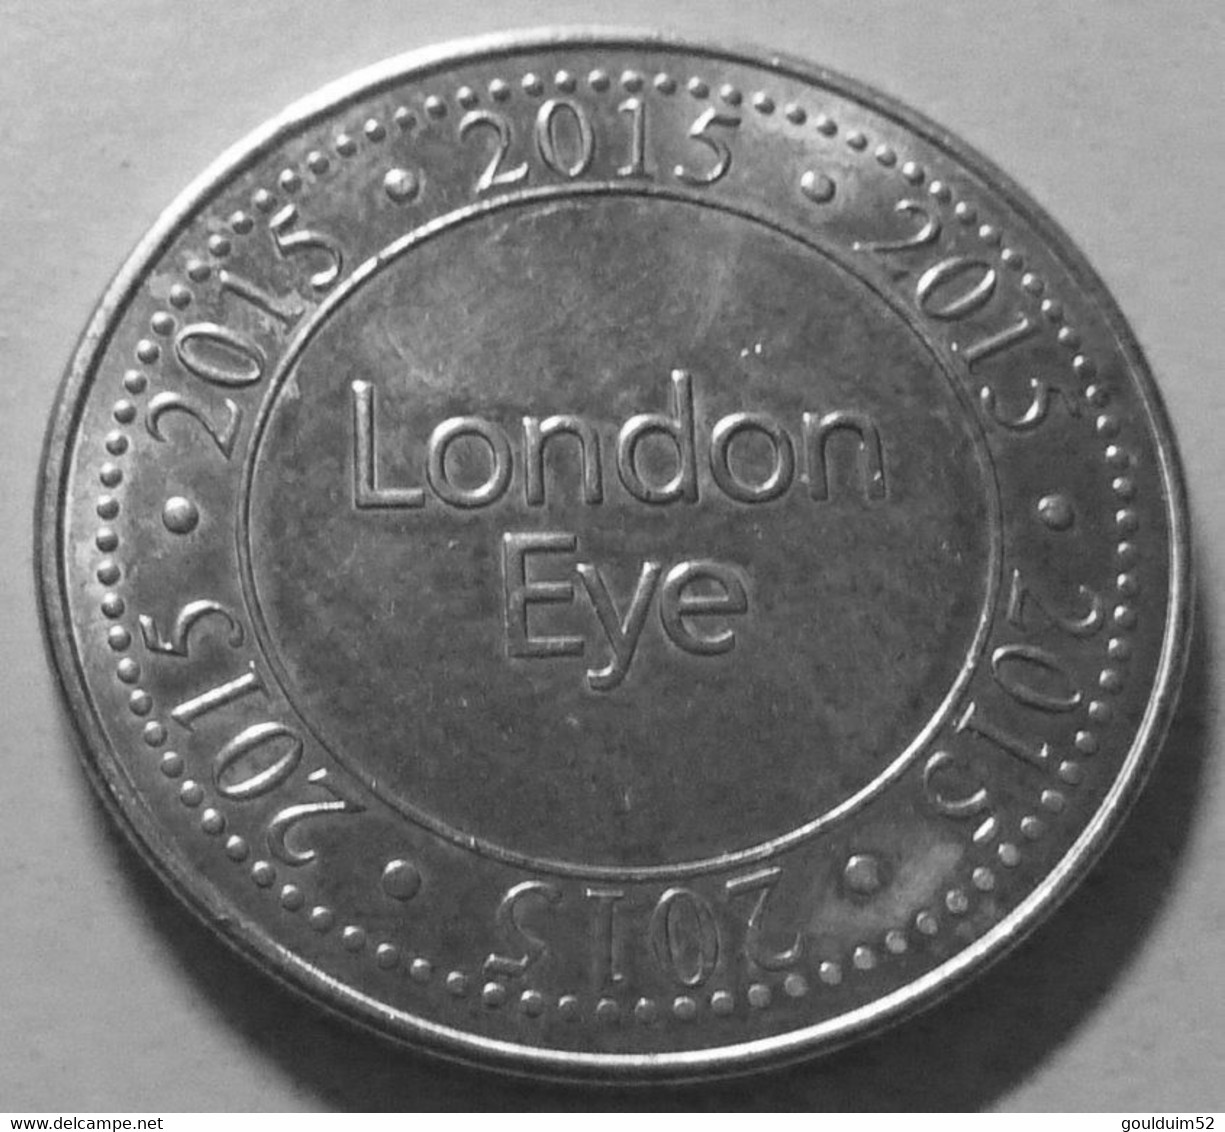 London : Eye - Firma's